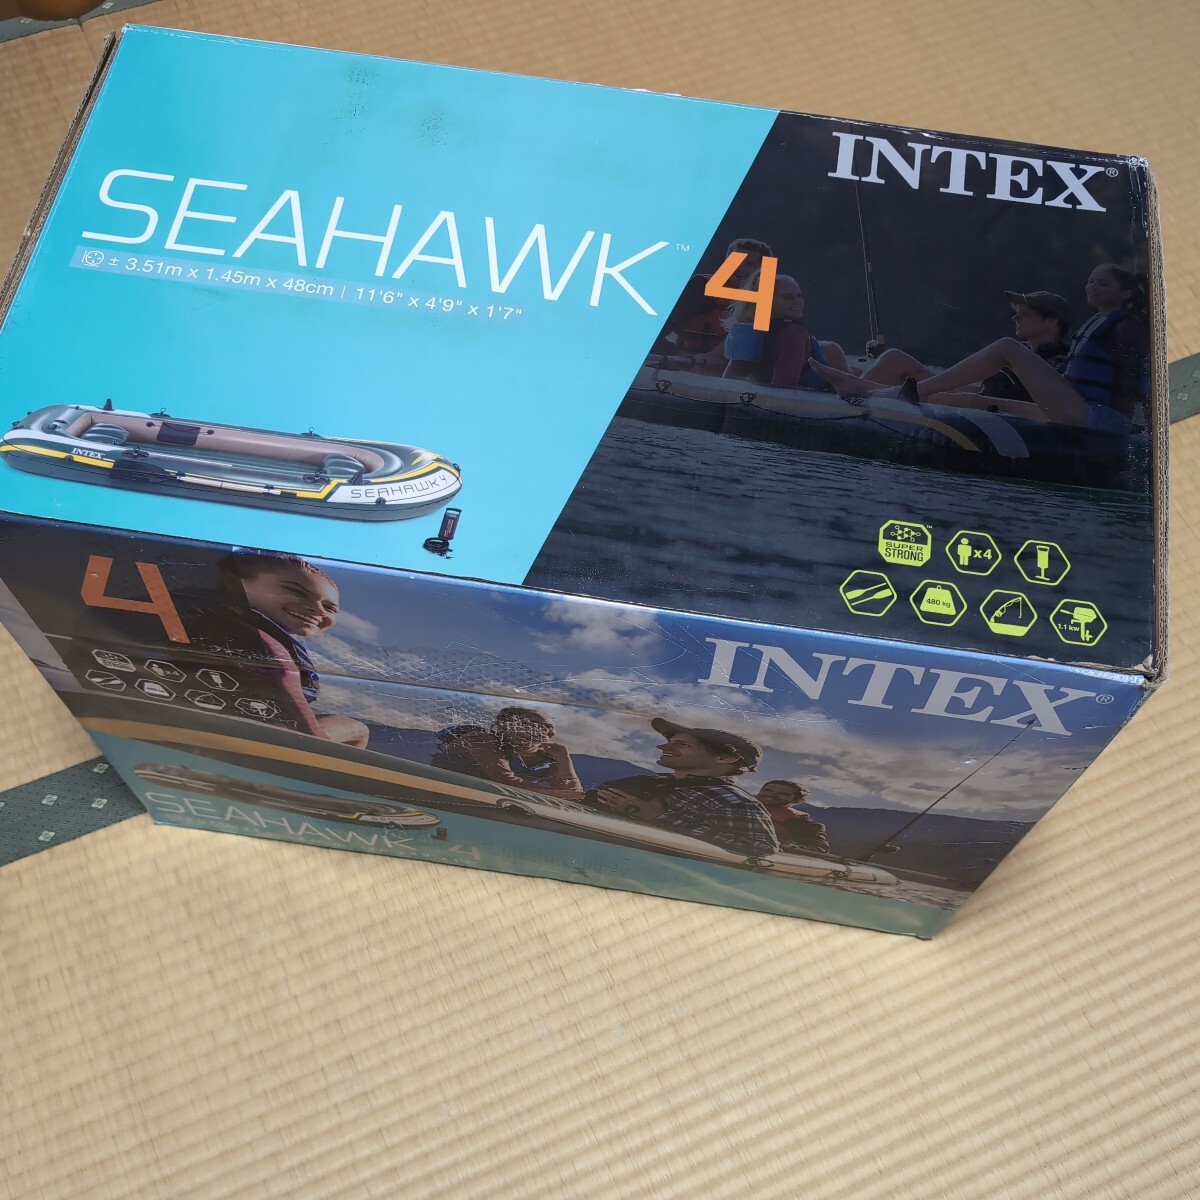 未使用品 送料無料 インテックス シーホーク4 INTEX Seahawk 4 Inflatable Boat Set 4人乗り 釣り 海水浴 ボート 釣りボートの画像1